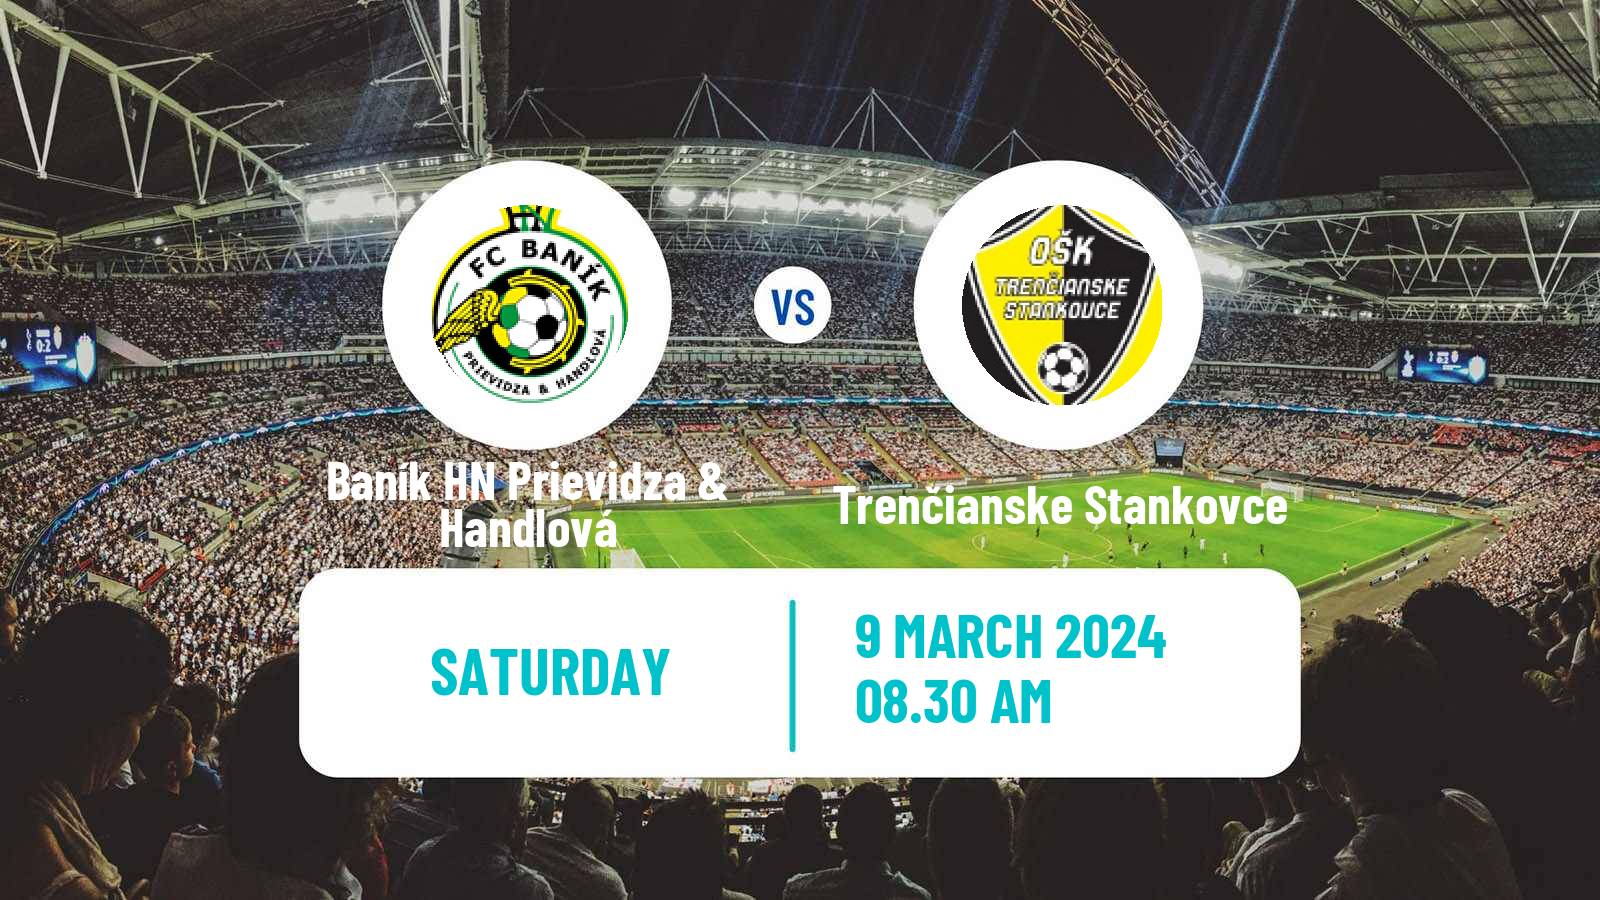 Soccer Slovak 4 Liga West Baník HN Prievidza & Handlová - Trenčianske Stankovce